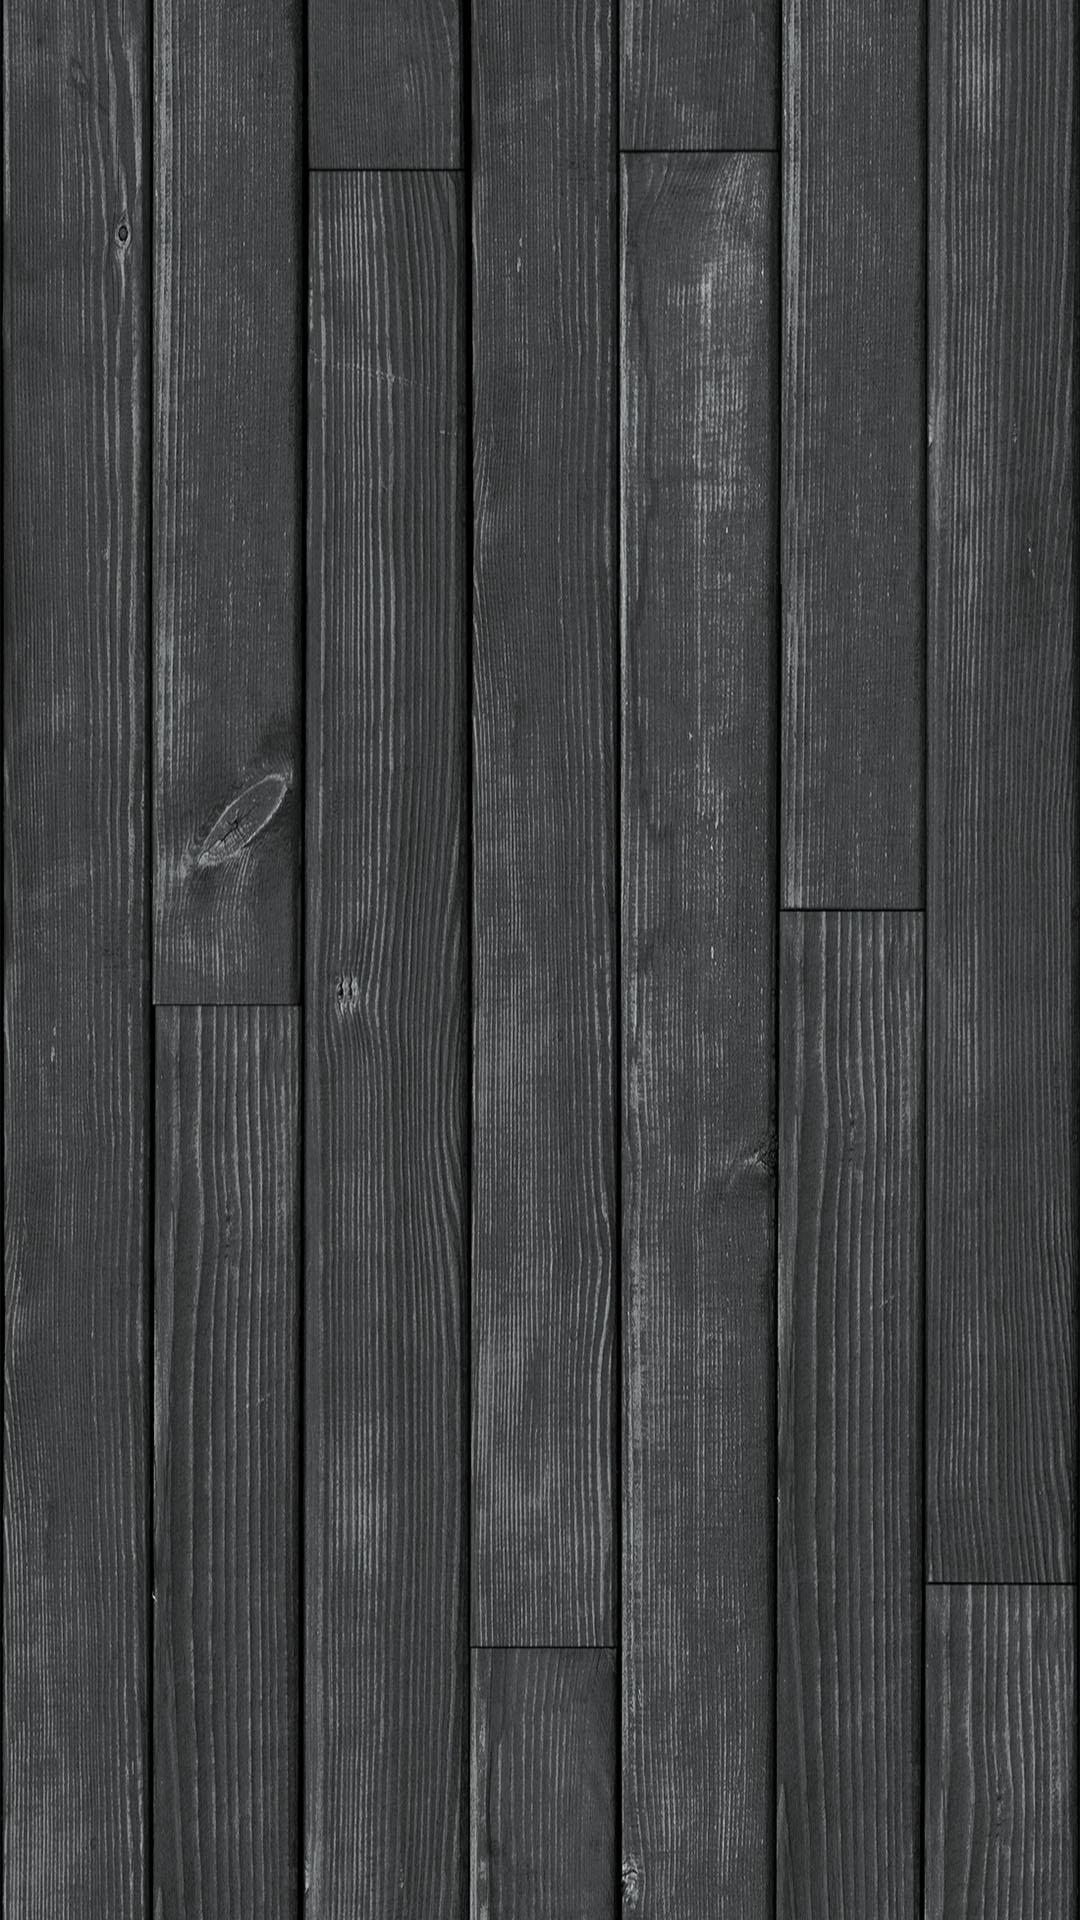 Hình nền gỗ đen là một lựa chọn đầy sang trọng và tinh tế cho bất kì không gian nào. Bất kỳ hình ảnh nào được đặt lên nền gỗ đen cũng sẽ trở nên nổi bật hơn và thu hút ánh nhìn của mọi người. Hãy cùng xem hình nền gỗ đen để thưởng thức một thế giới đẹp đến ngỡ ngàng!